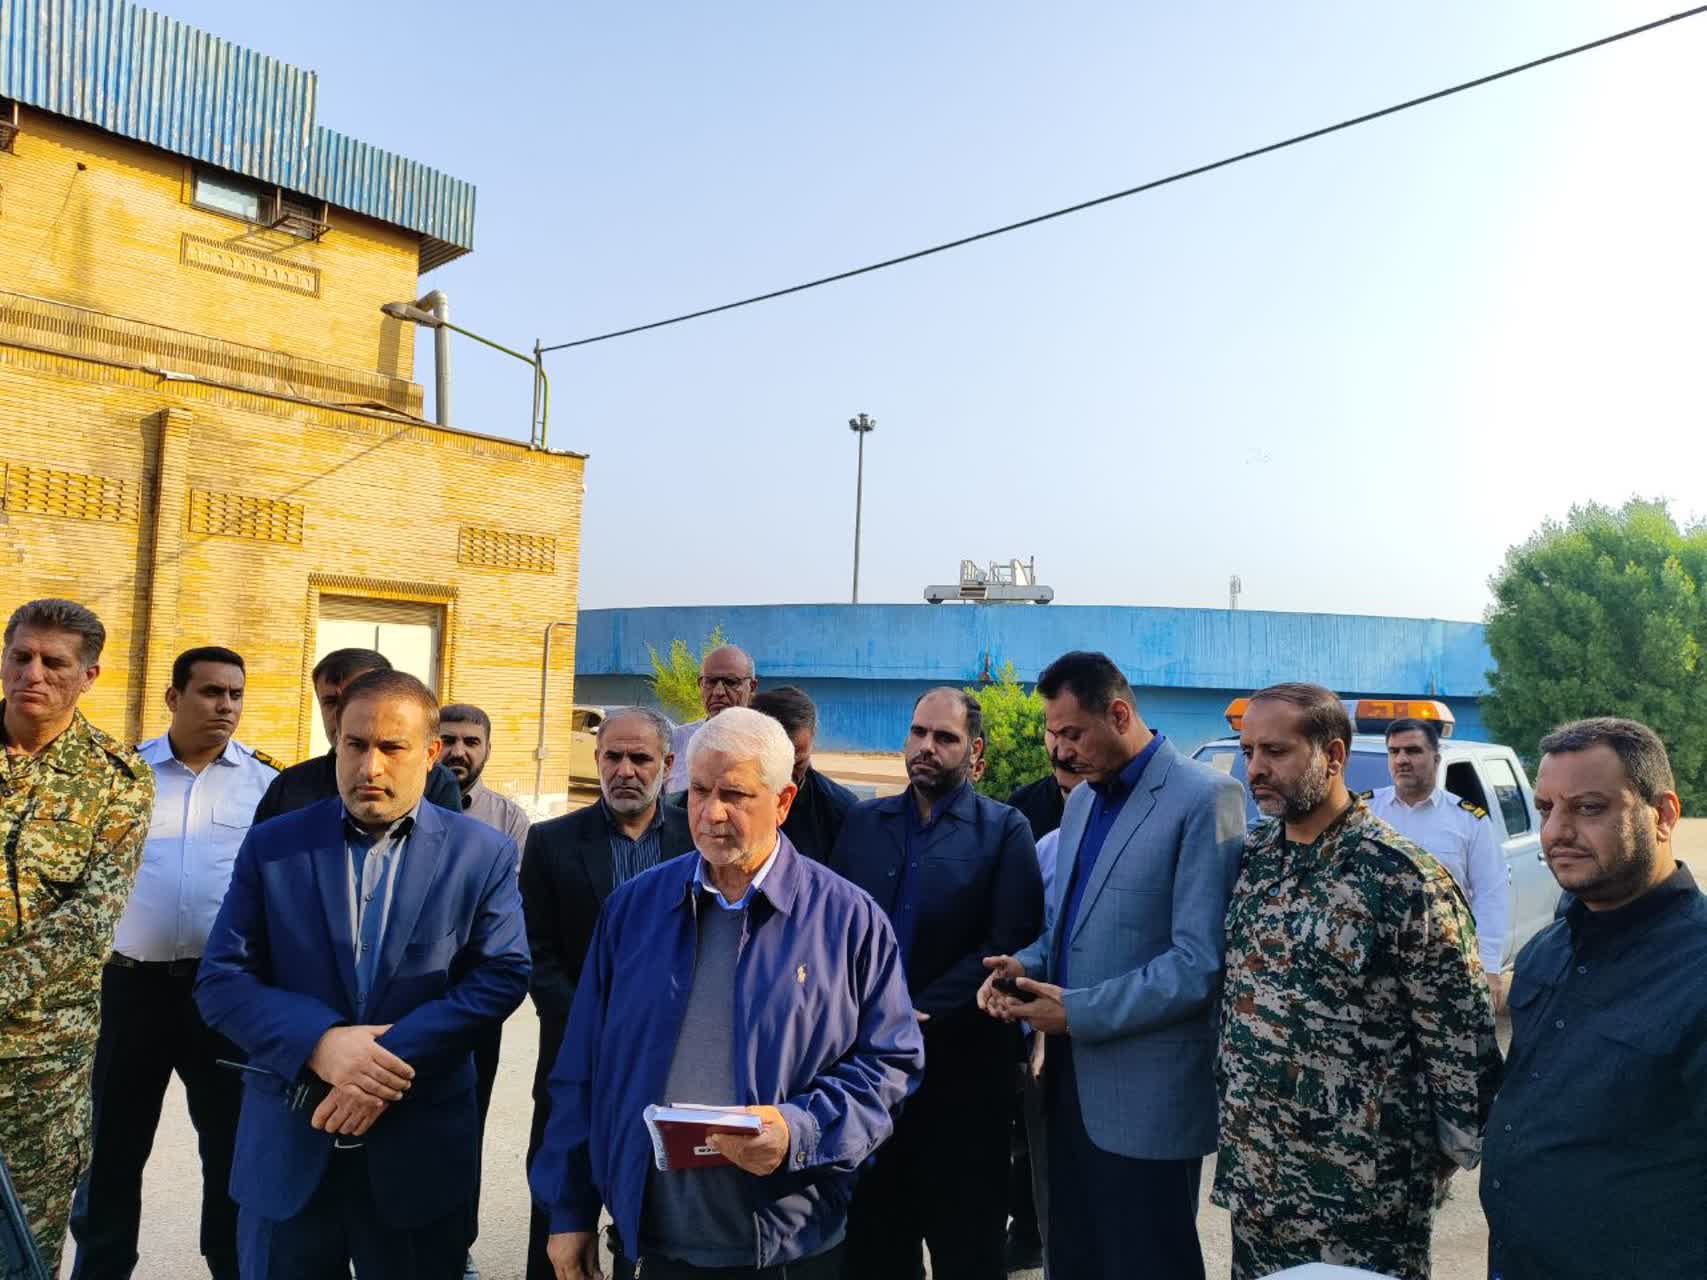 همزمان با سراسر کشور در 38 تاسیسات آبفا استان انجام شد: برگزاری چهارمین مانور بزرگ دفاع از مقر تاسیسات آب و فاضلاب خوزستان